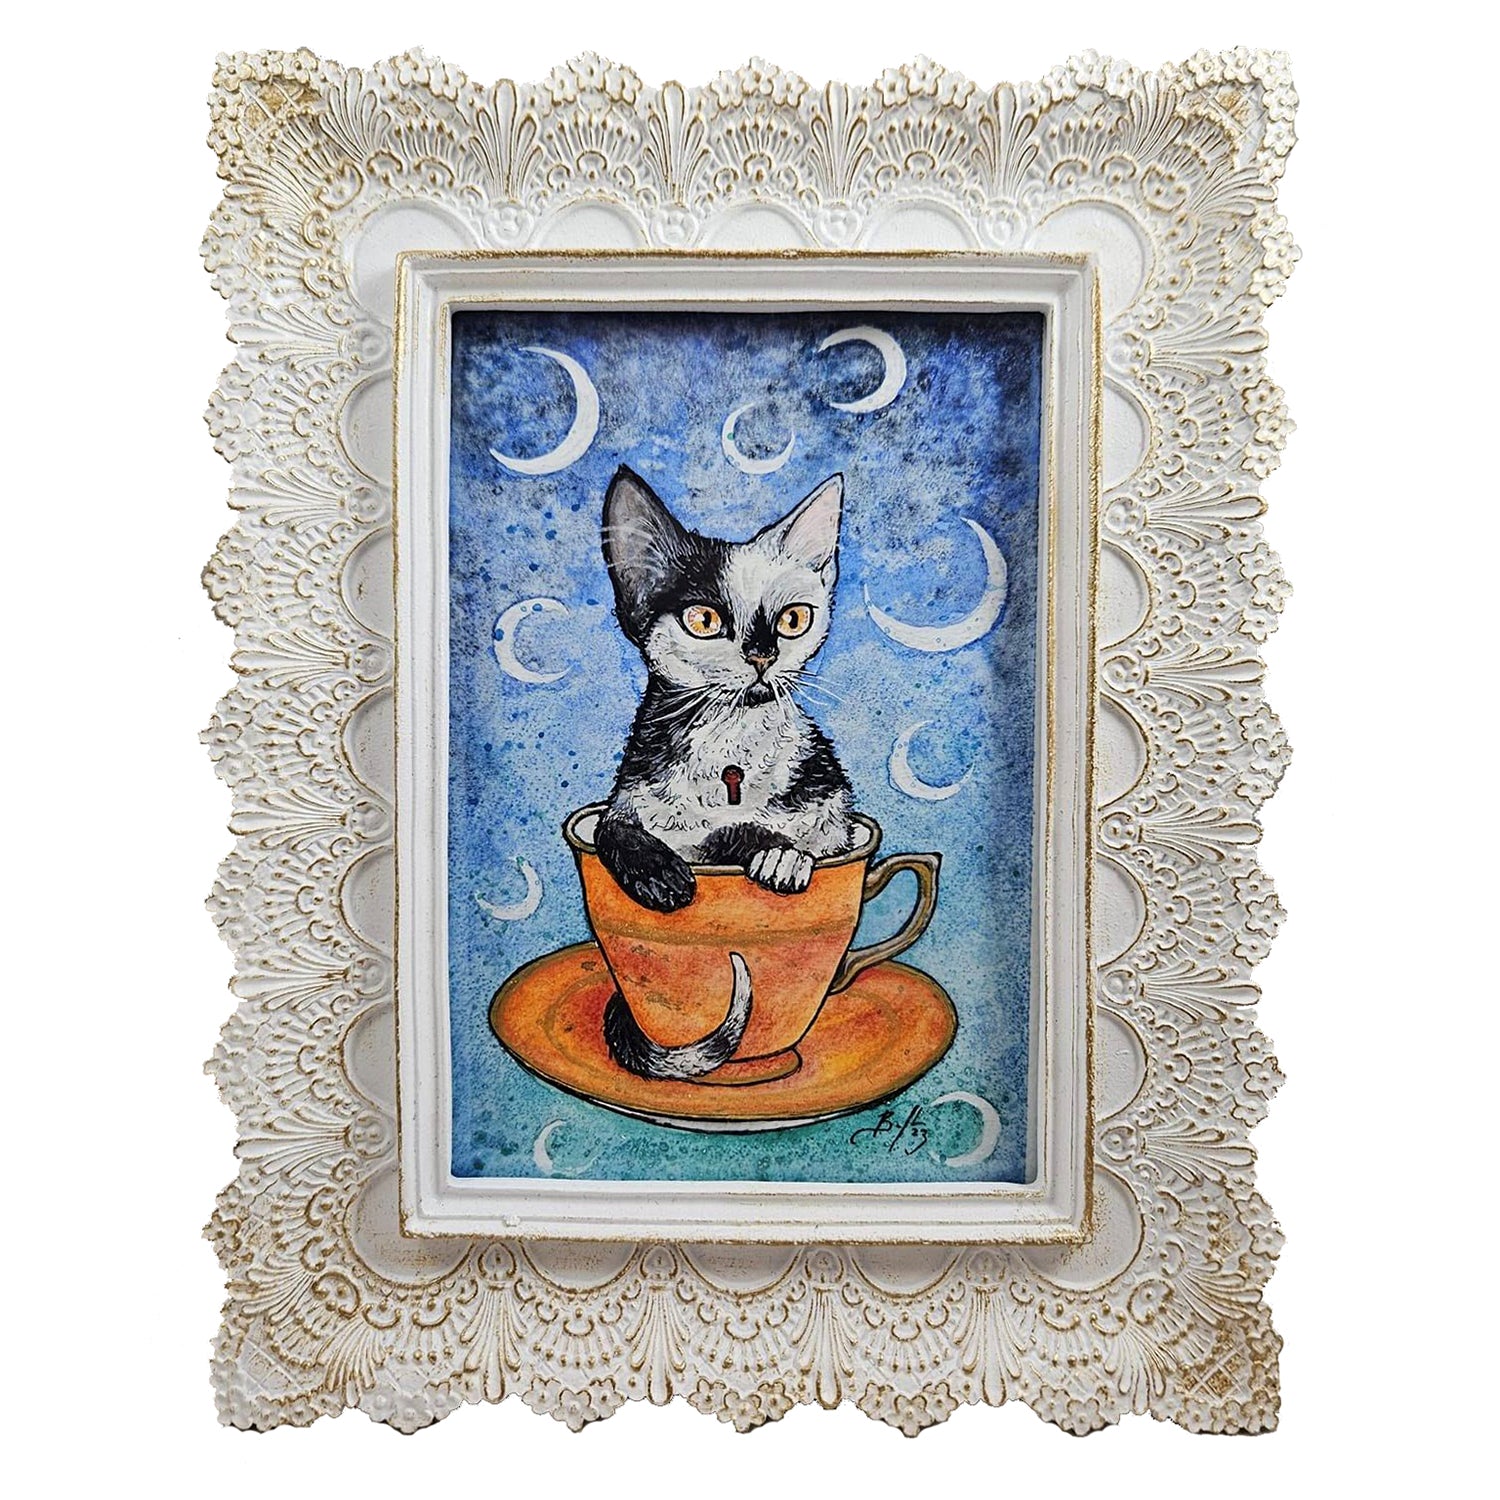 Original Art- Teacup Kitten: Mint with Moon